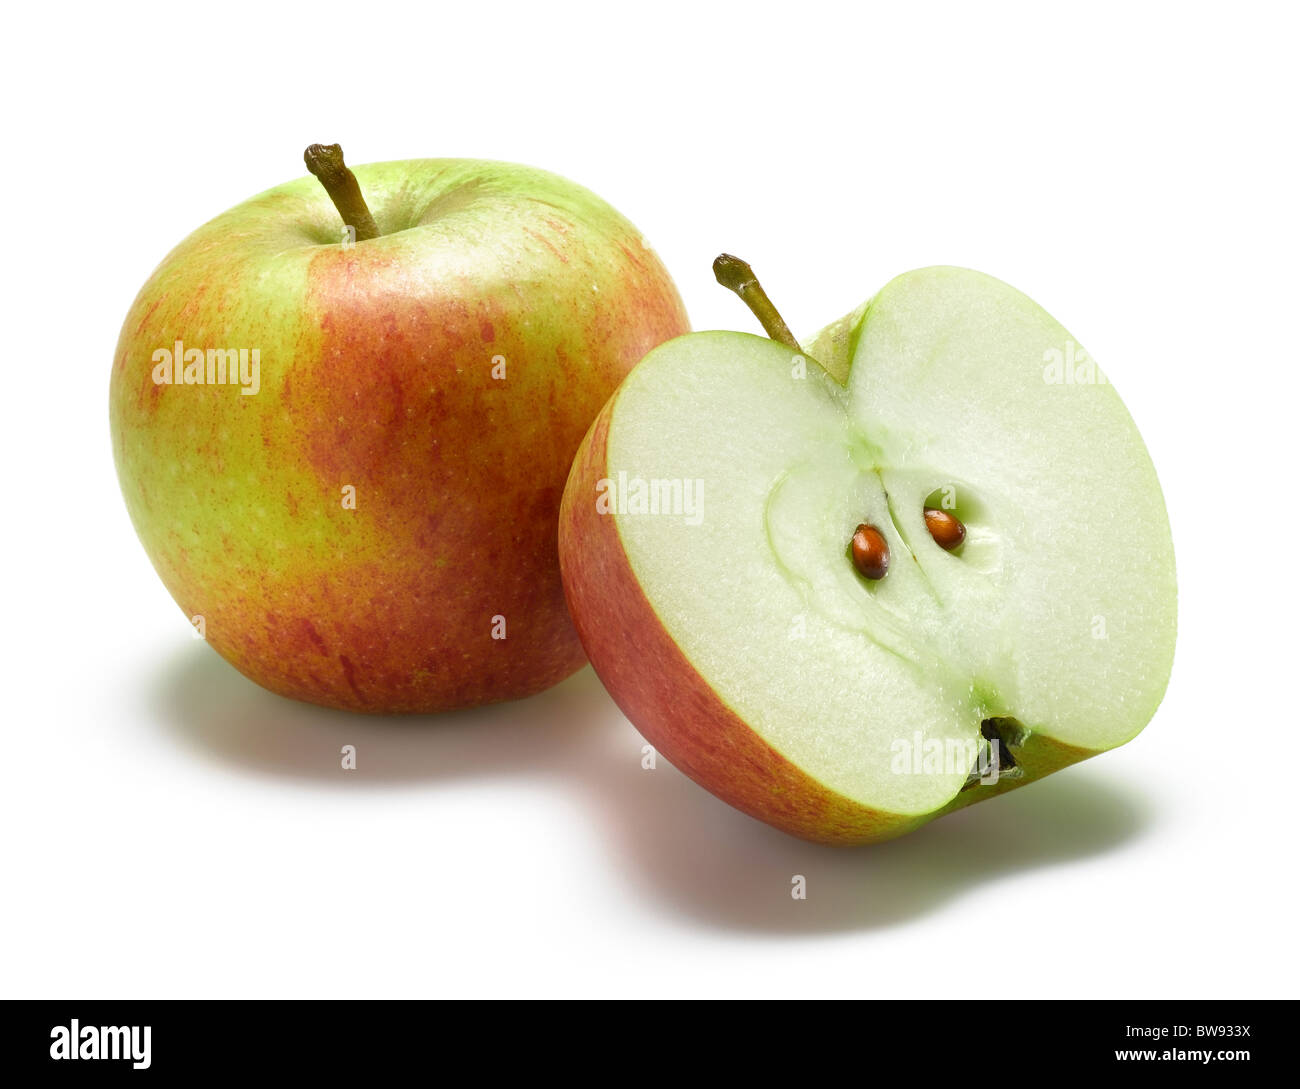 Tagliare la mela immagini e fotografie stock ad alta risoluzione - Alamy